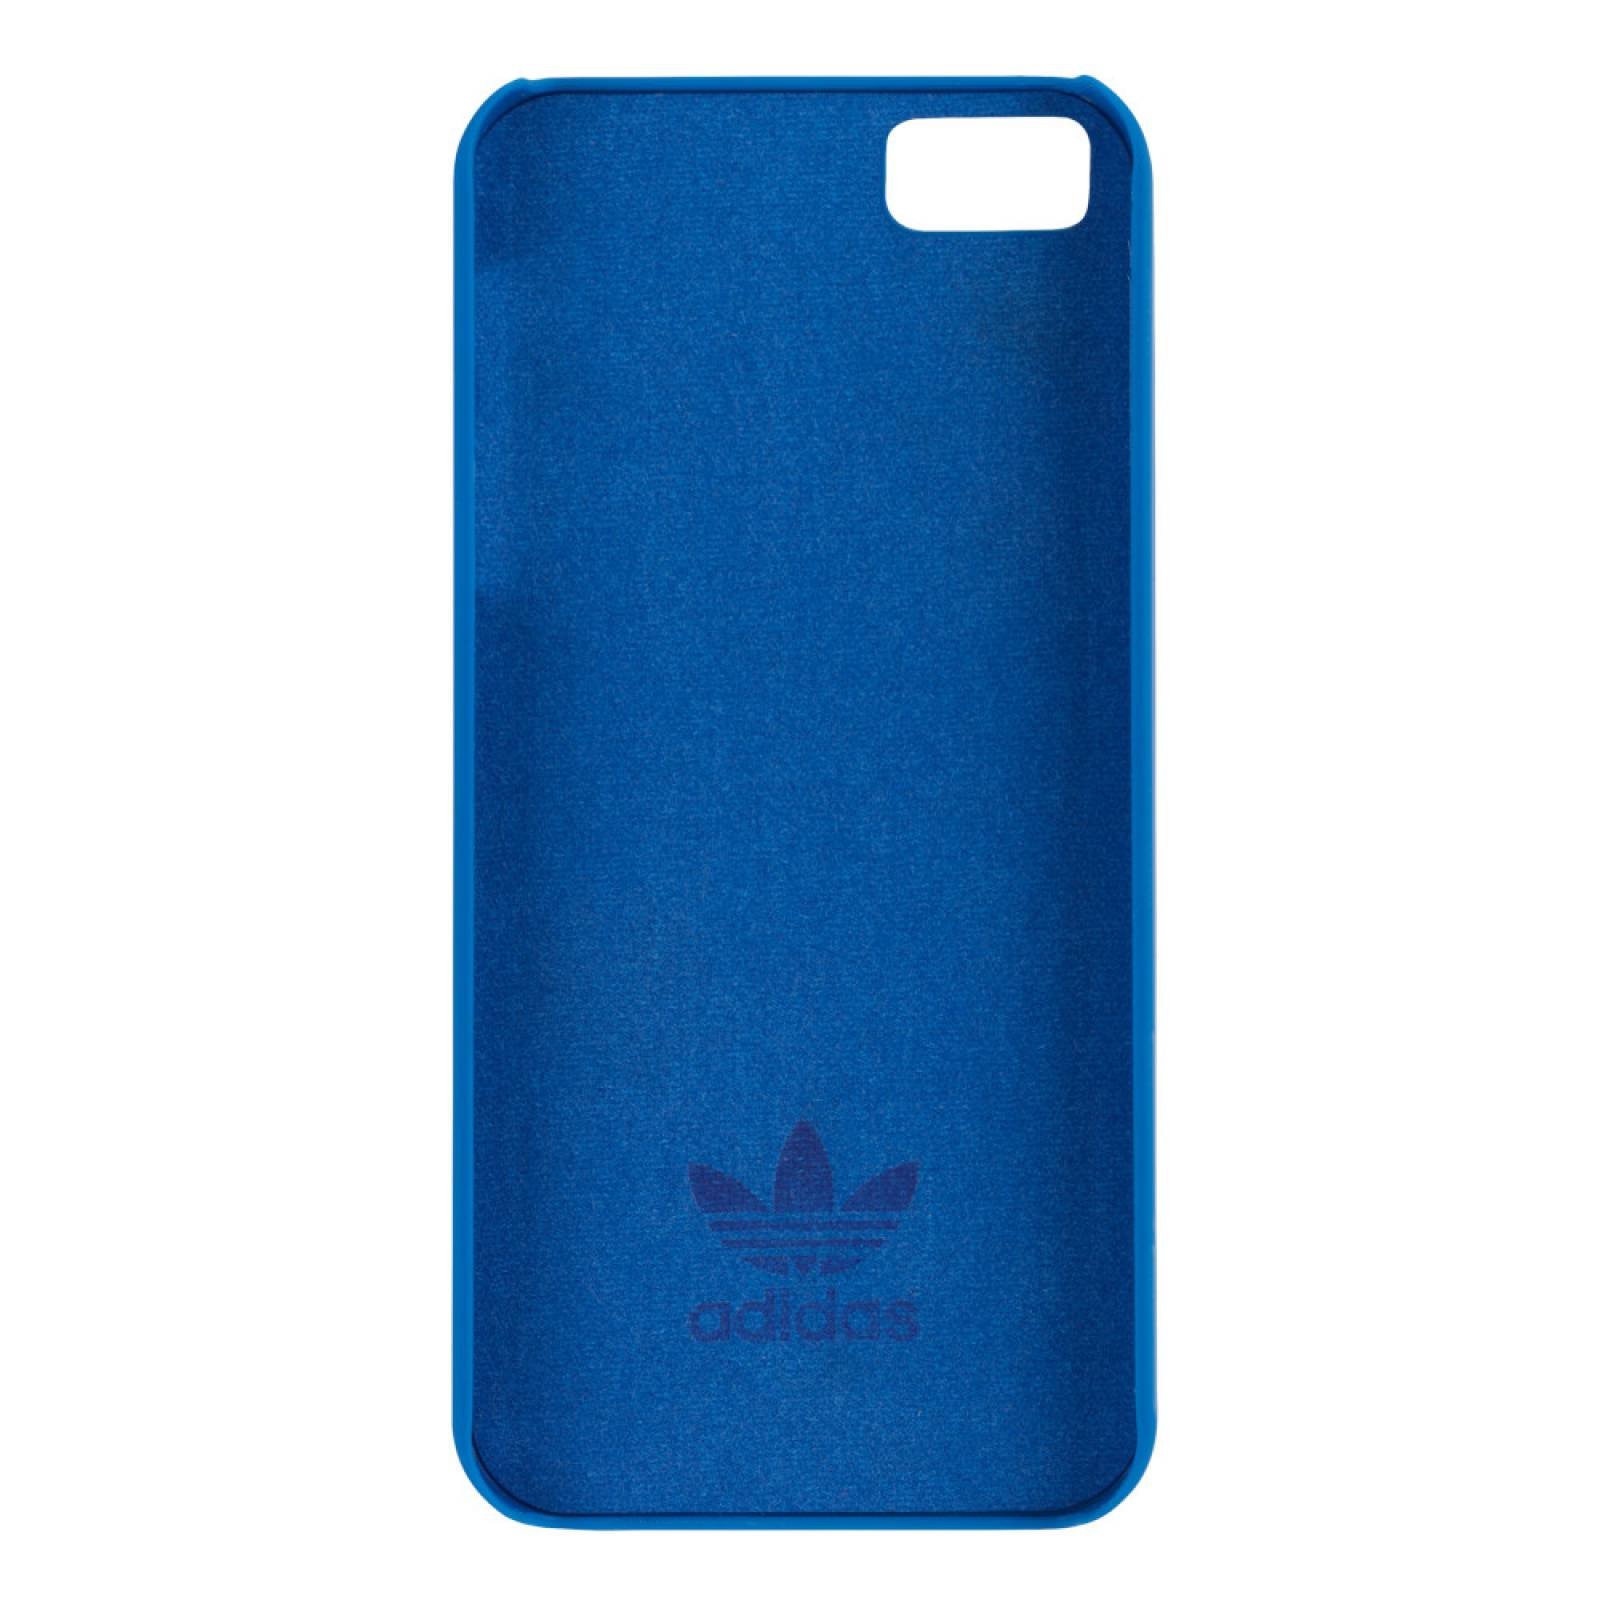 Funda Stripes Adidas Originals iPhone 5c